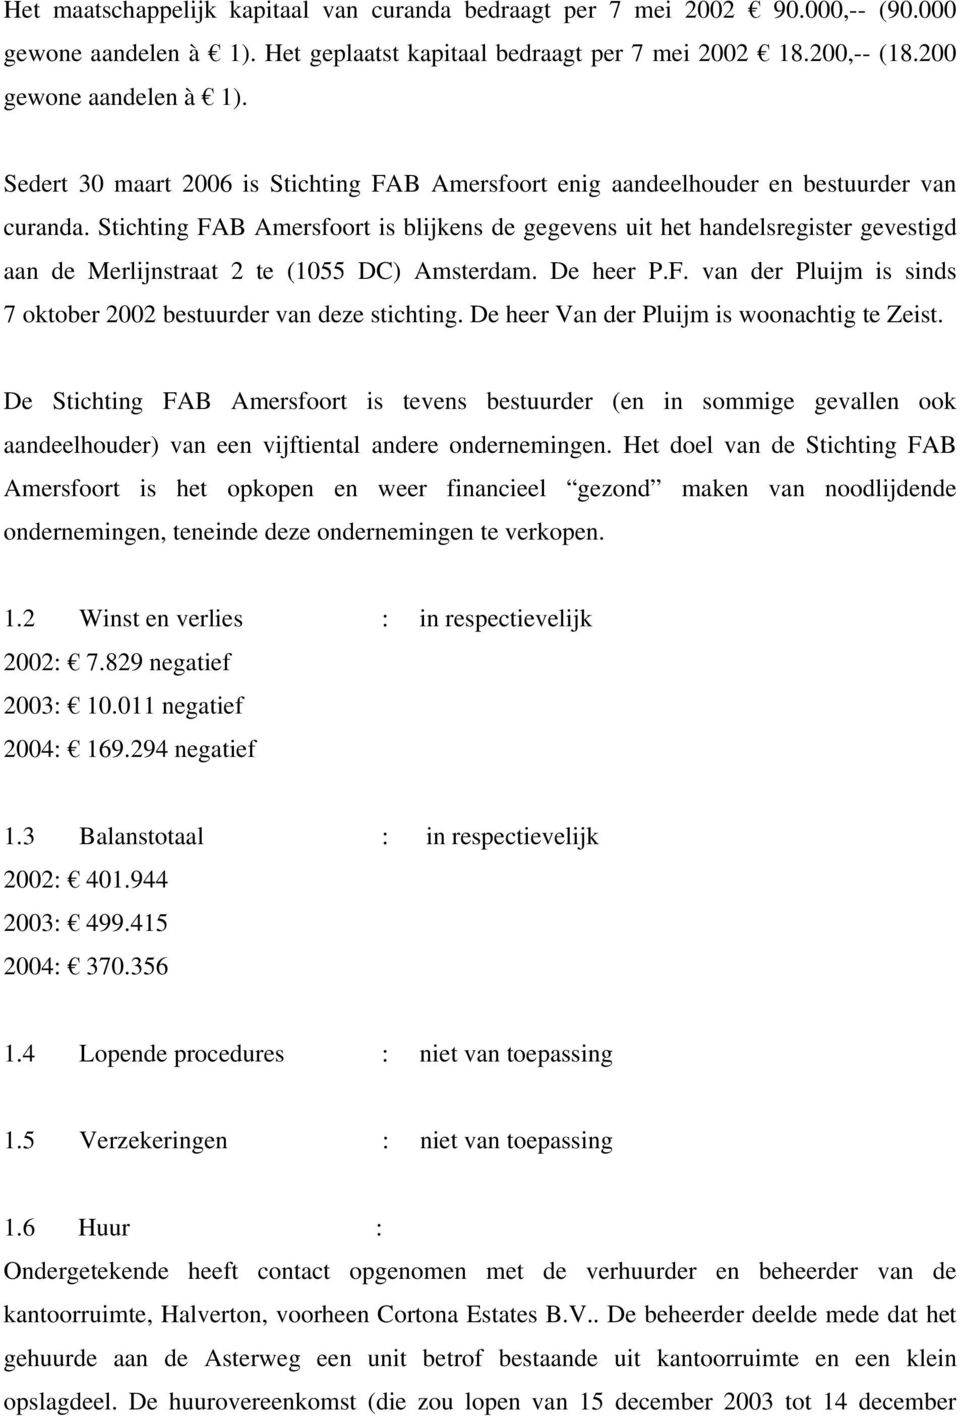 Stichting FAB Amersfoort is blijkens de gegevens uit het handelsregister gevestigd aan de Merlijnstraat 2 te (1055 DC) Amsterdam. De heer P.F. van der Pluijm is sinds 7 oktober 2002 bestuurder van deze stichting.